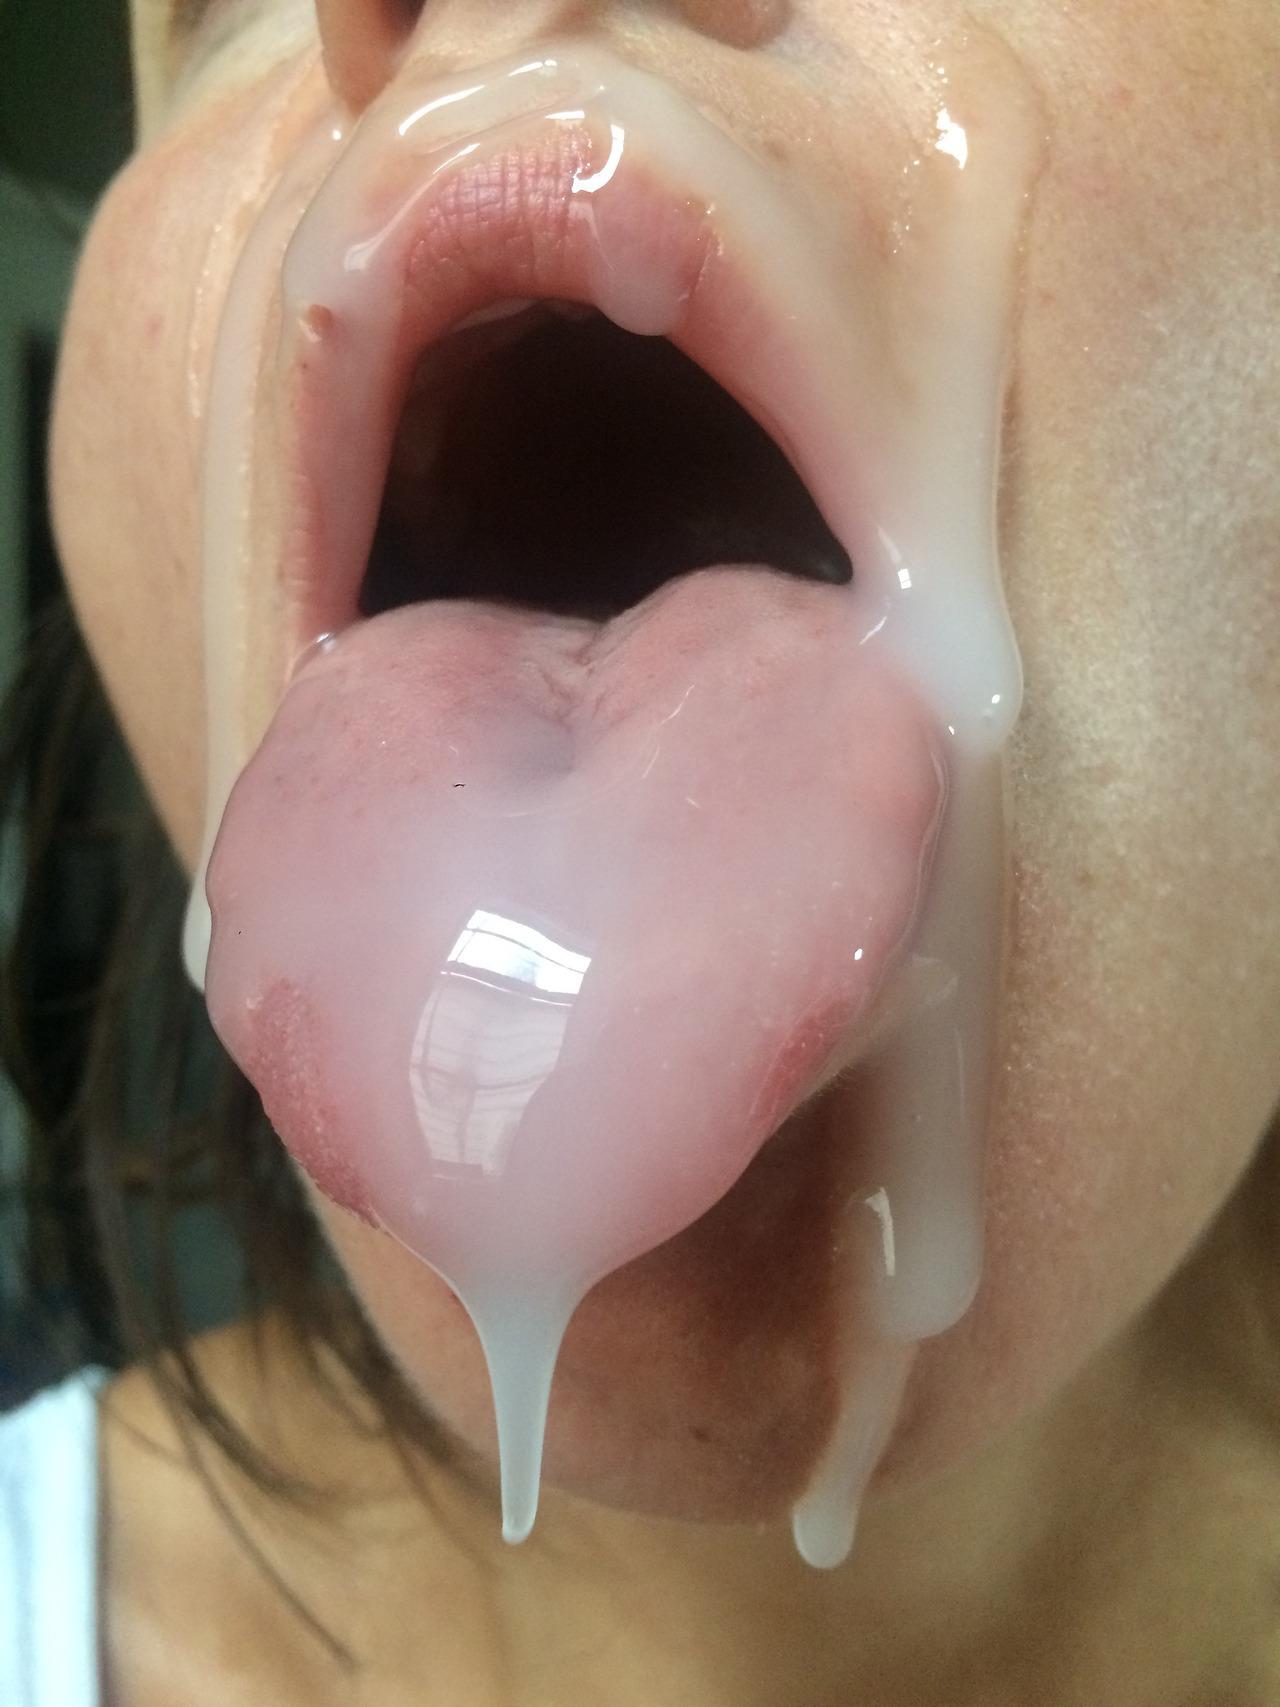 Cum on my tongue